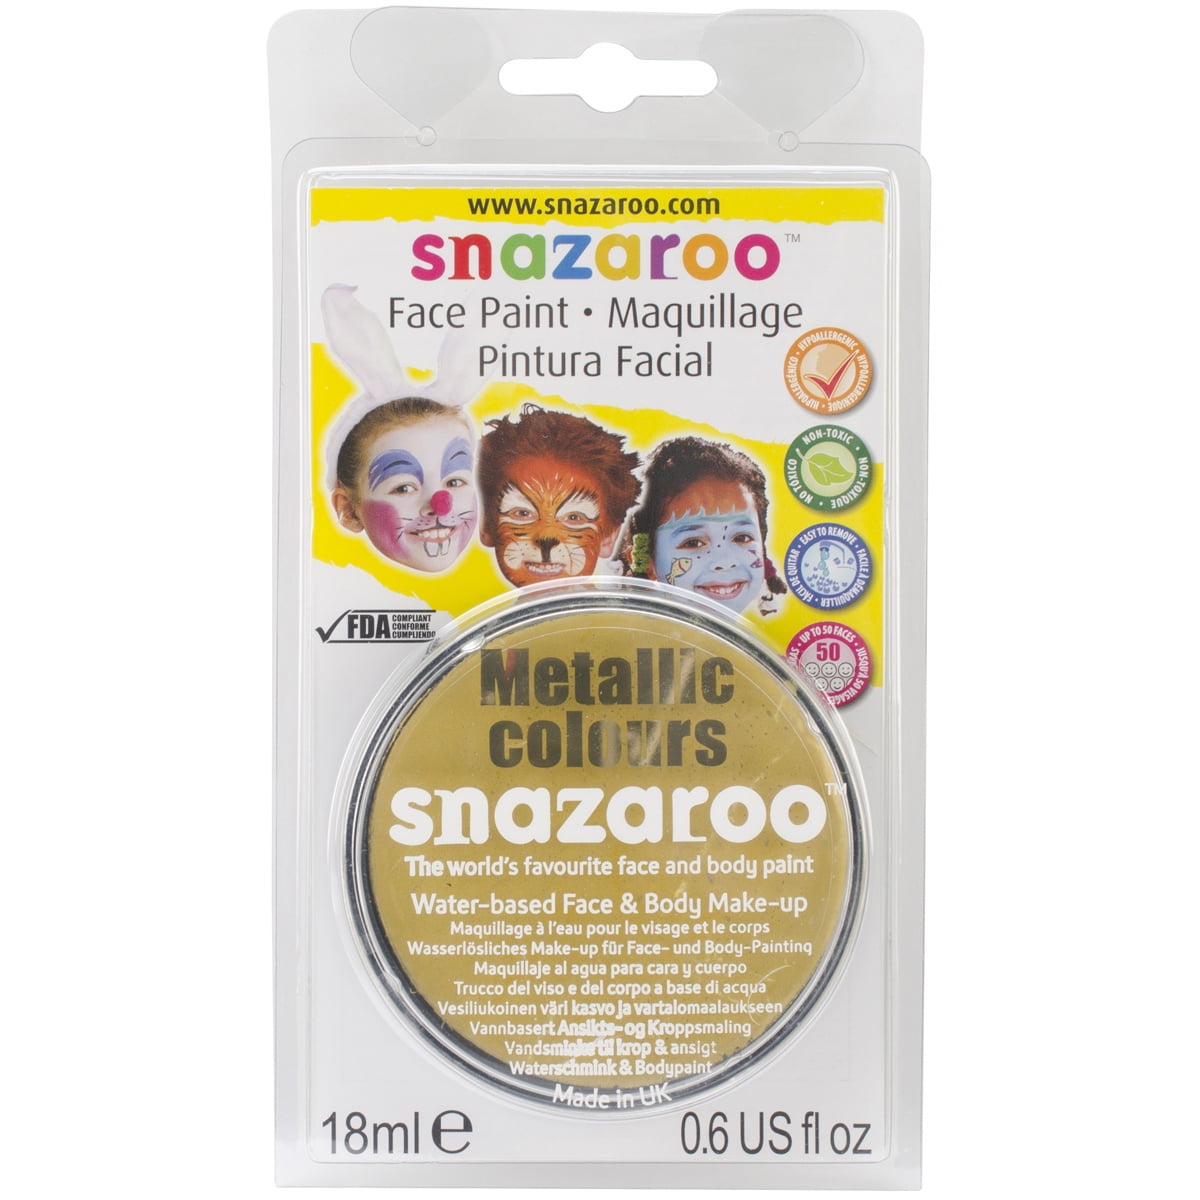 Snazaroo™ Adventure Face Paint Kit